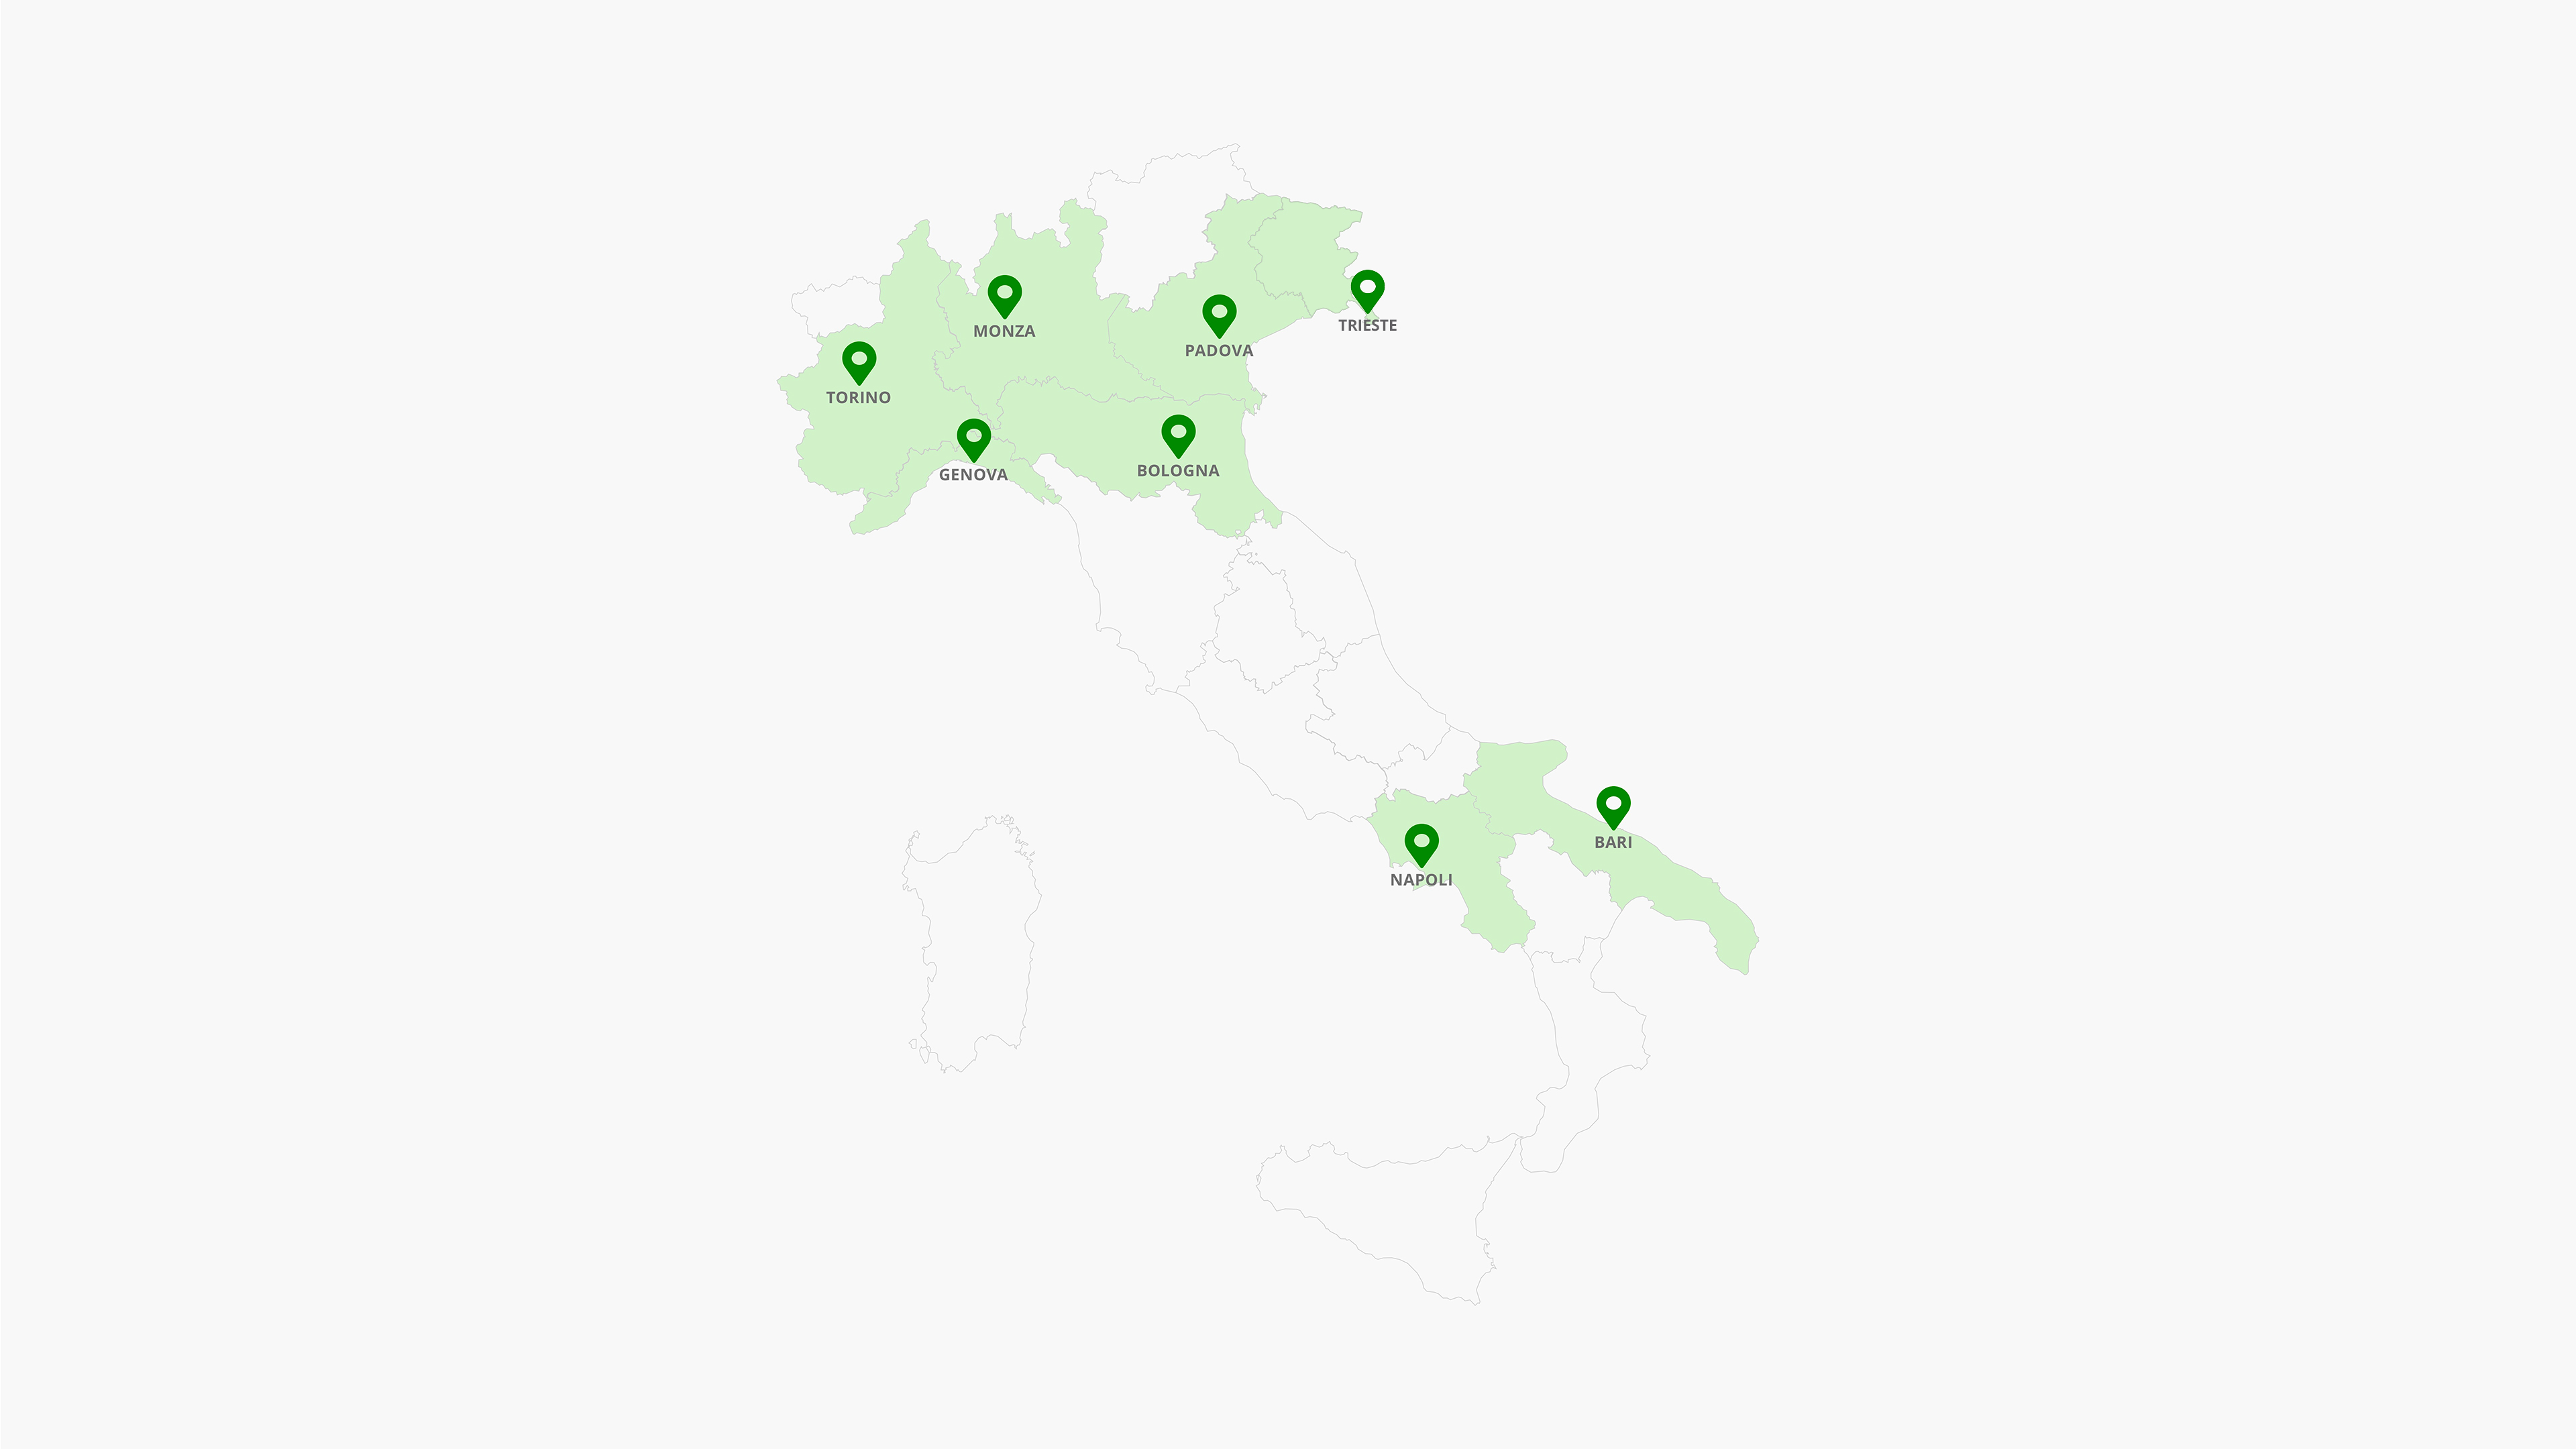 Il Programma educativo Intesa Sanpaolo per bambini lungodegenti è attivo a Torino, Napoli, Monza, Padova, Bologna, Genova, Bari e Trieste